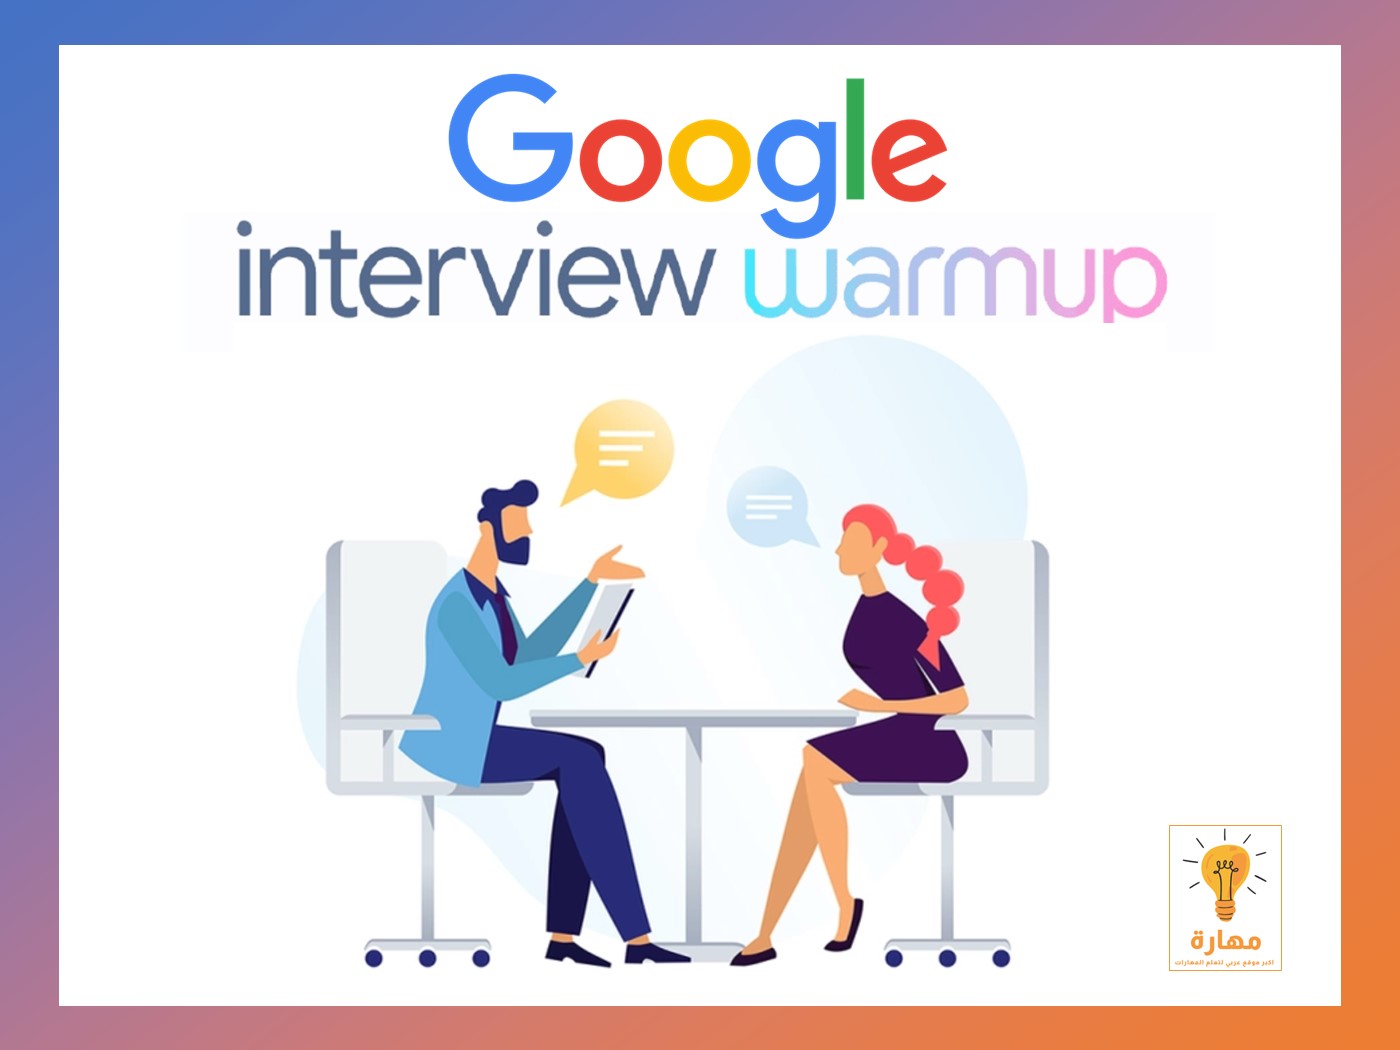 جهز نفسك لاي مقابلة شخصية مع اداة جوجل Interview Warmup المجانية